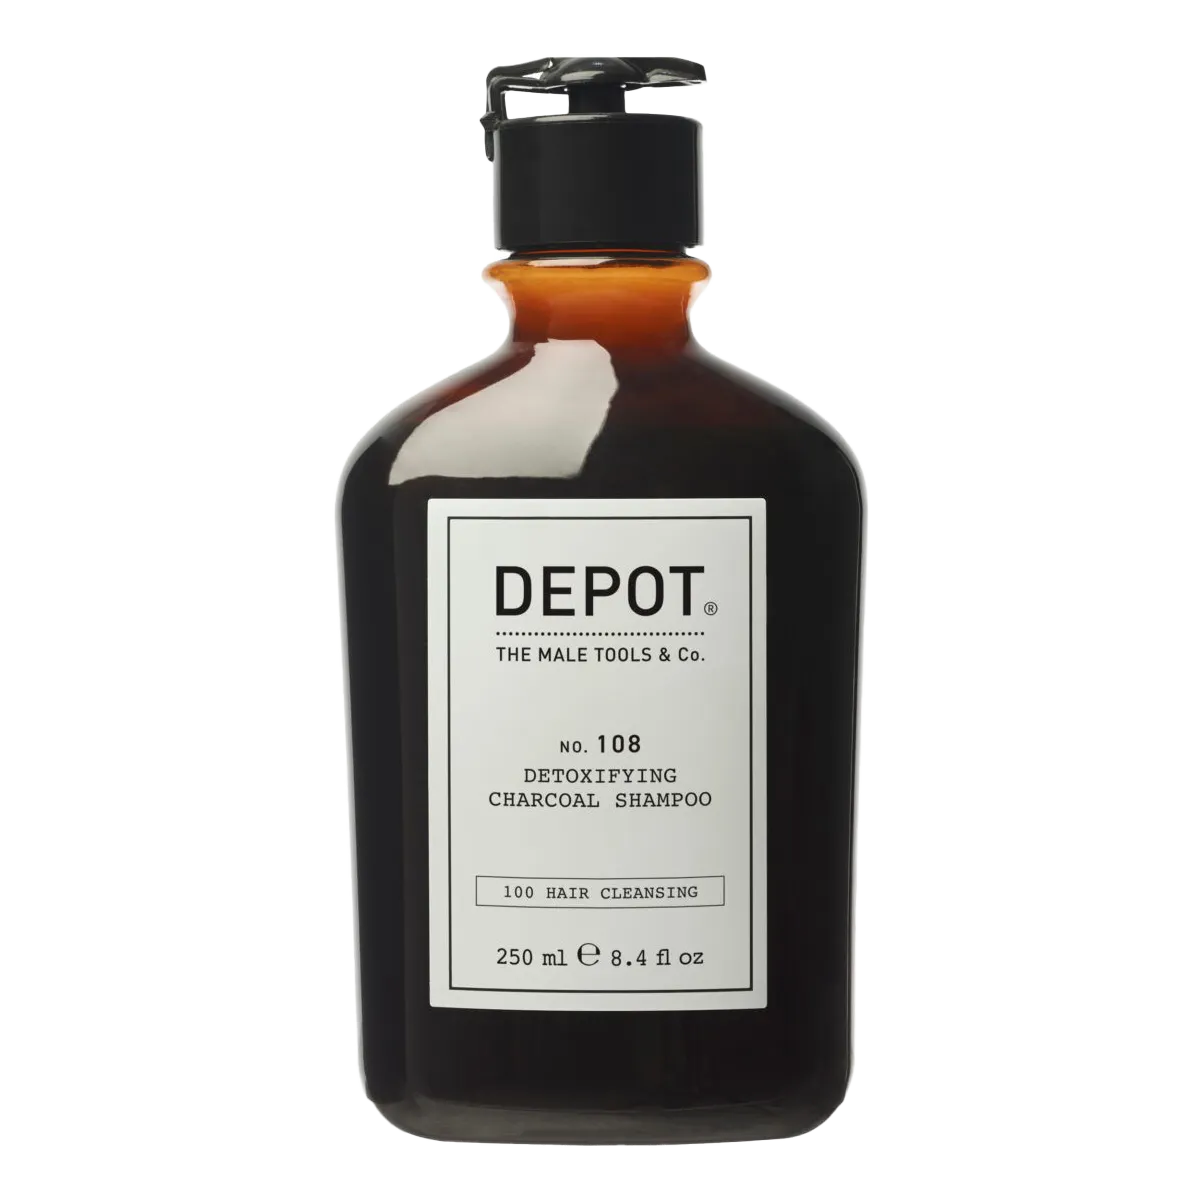 Depot No. 108 - Detoxifying Charcoal sjampo 